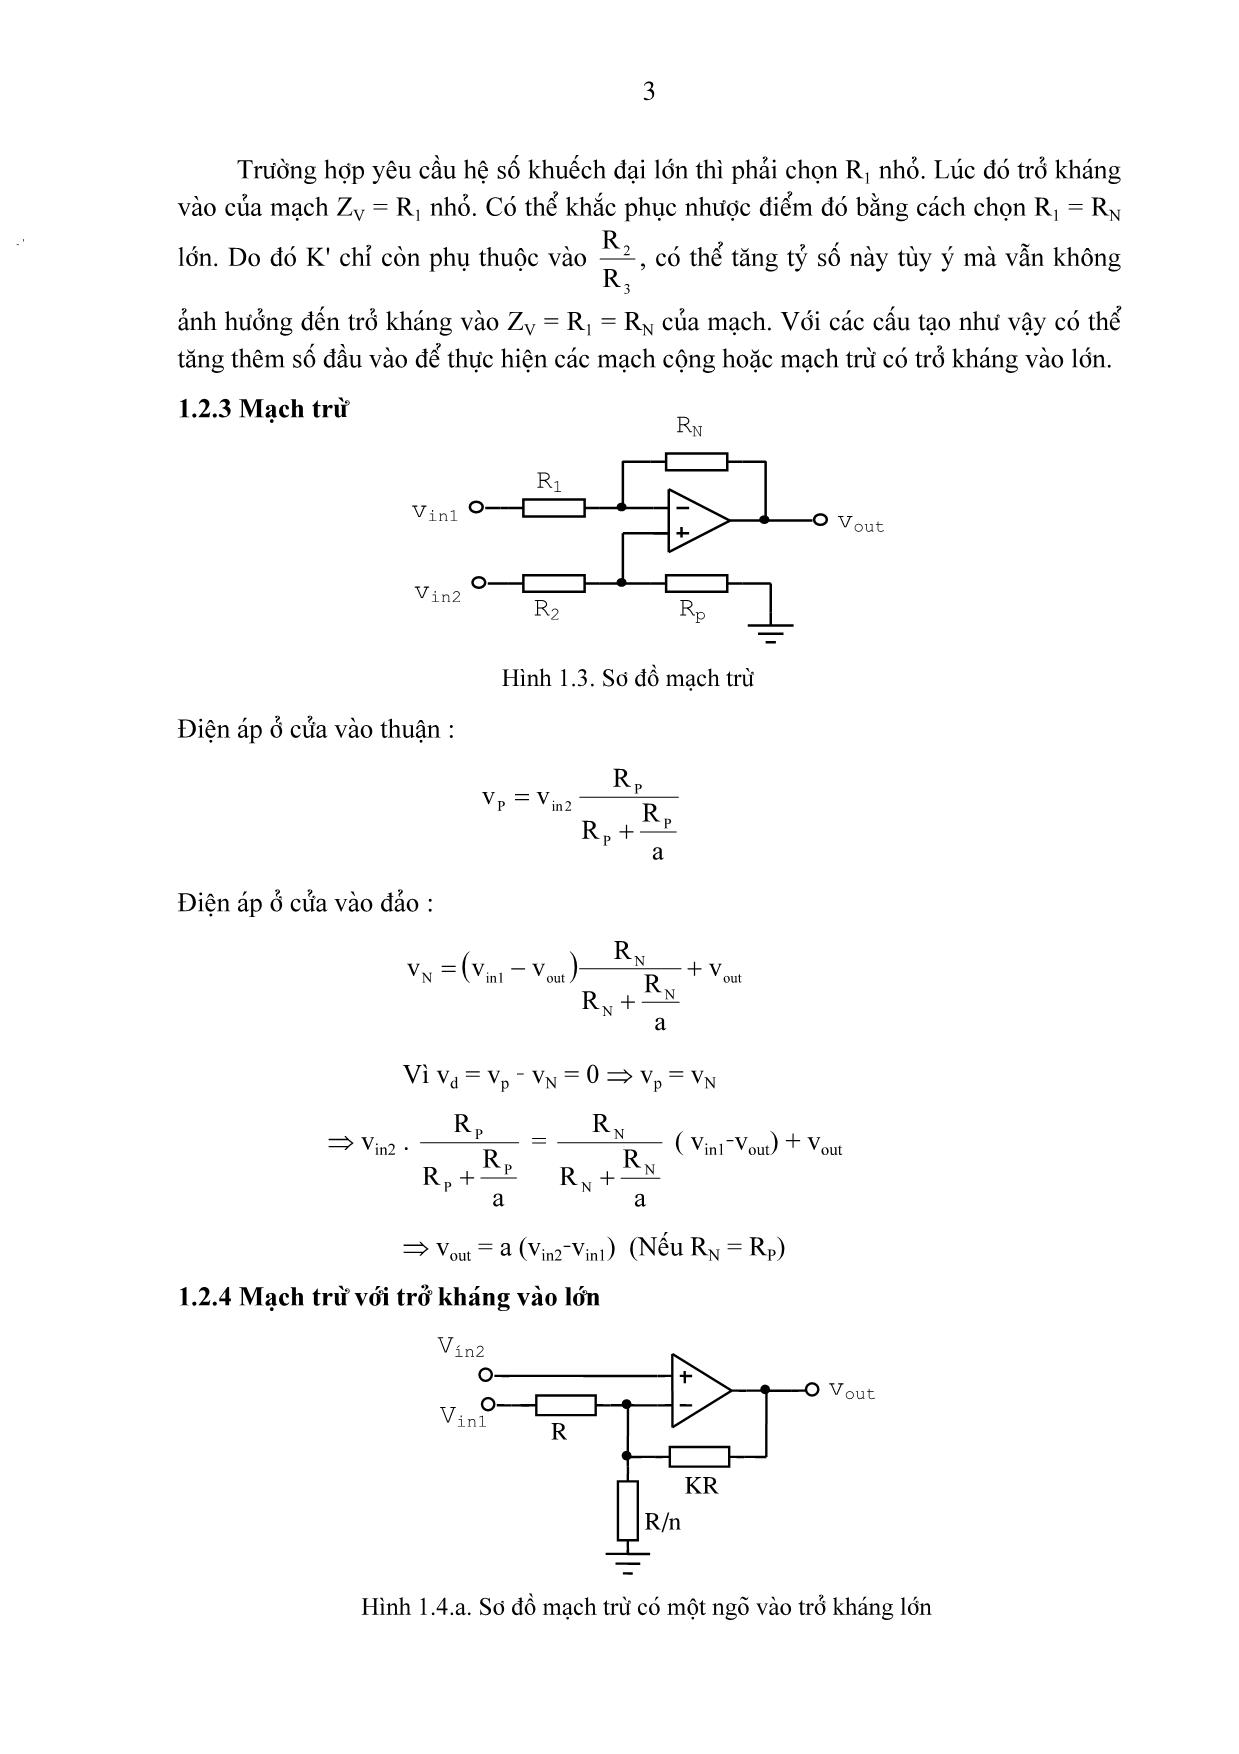 Bài giảng chương 1: Các mạch tính toán, điều khiển và tạo hàm dùng khuếch đại thuật toán trang 3